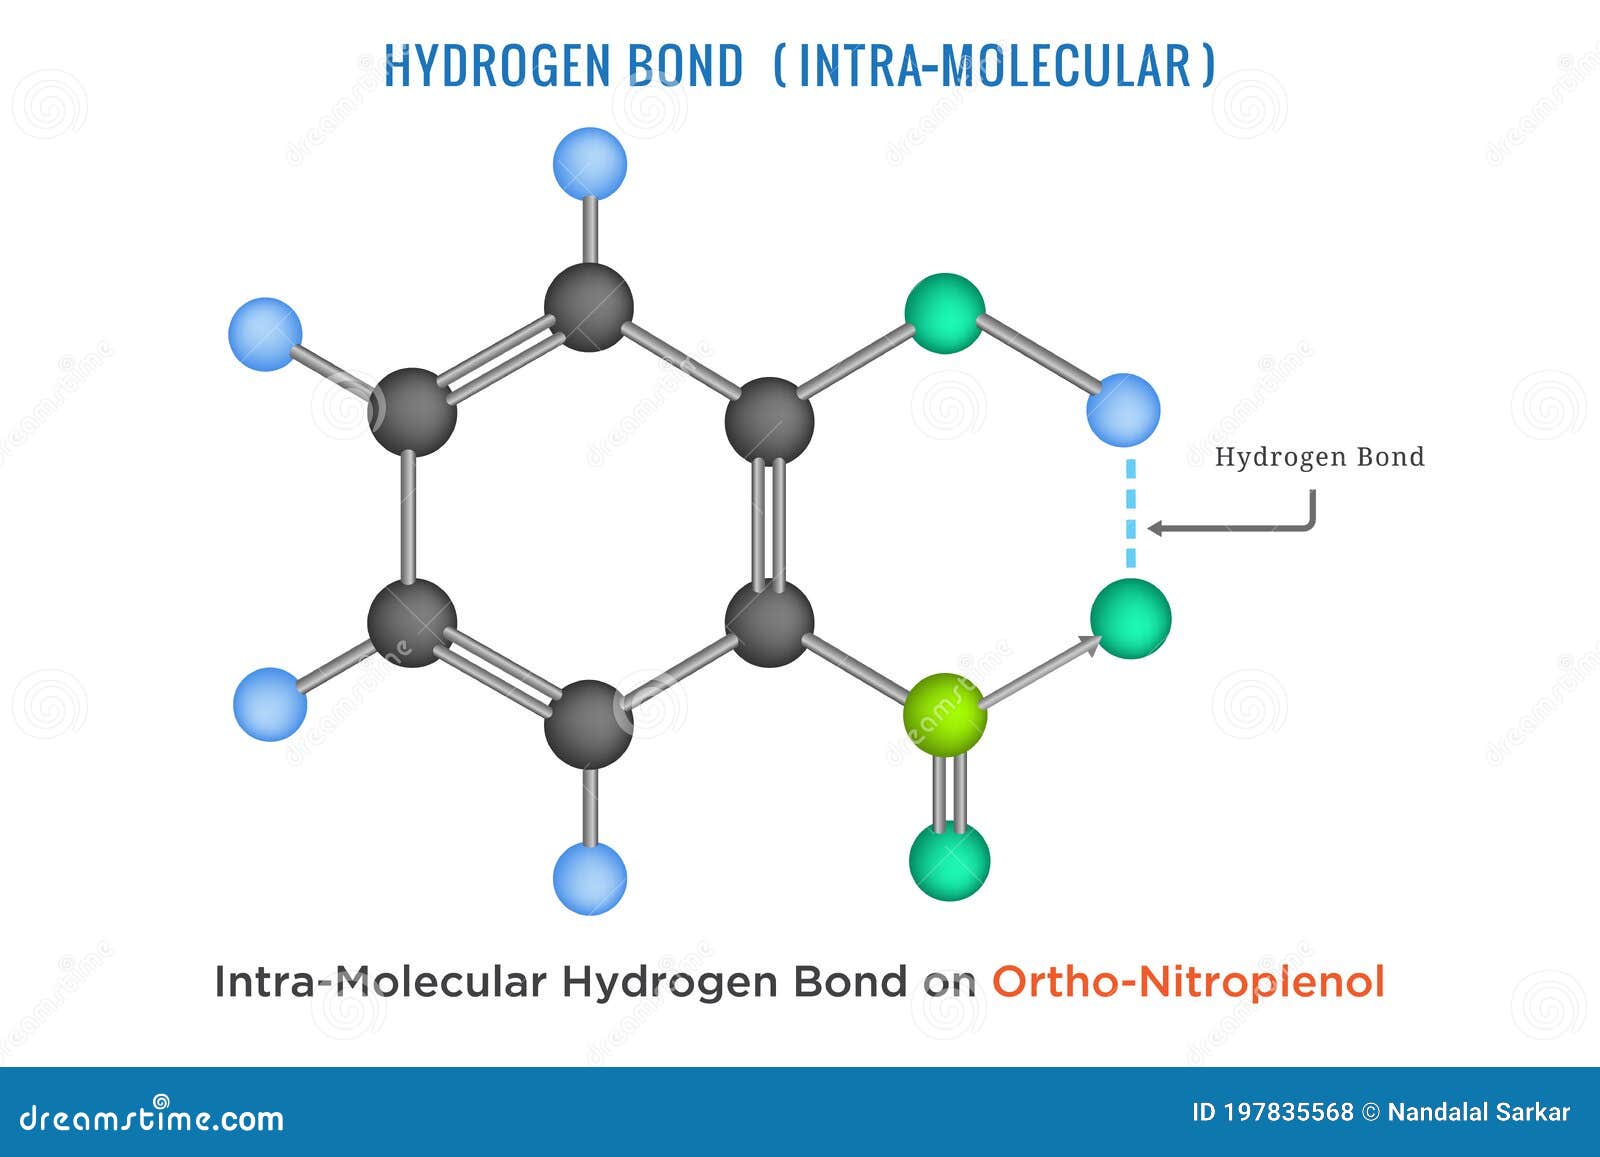 hydrogen bond, intra molecular hydrogen bond in ortho nitrophenol 2